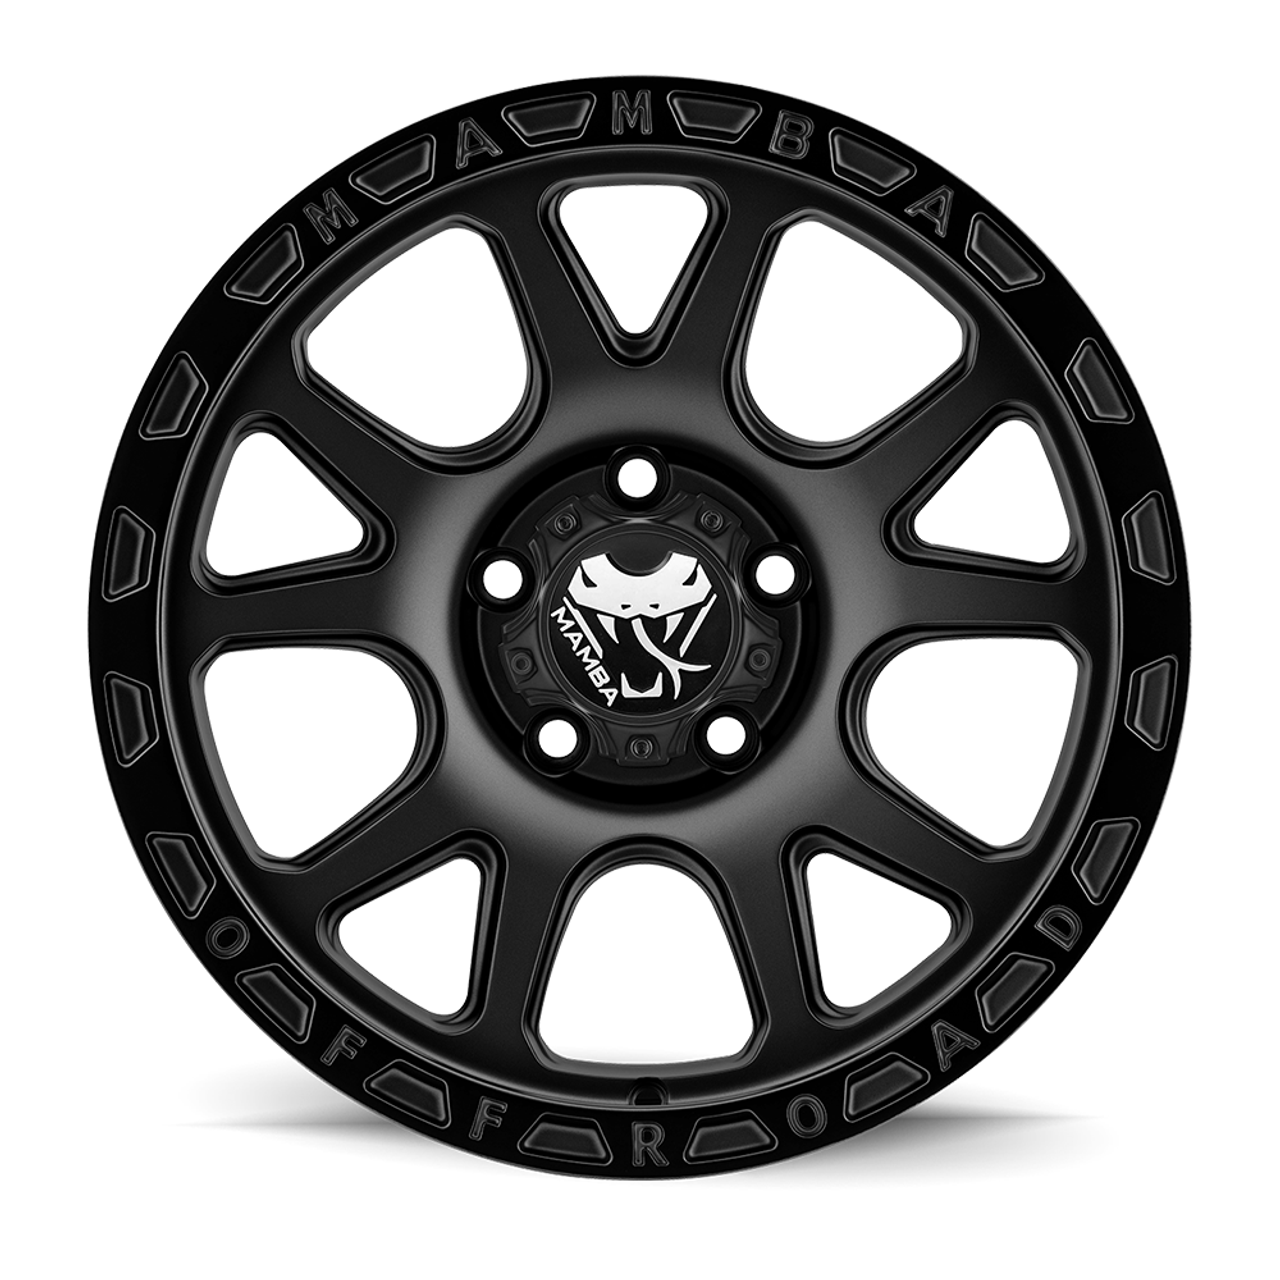 20" Mamba 599B M27 20x9 6x5.5 Matte Black Wheel 0mm For Chevy GMC Cadillac Rim